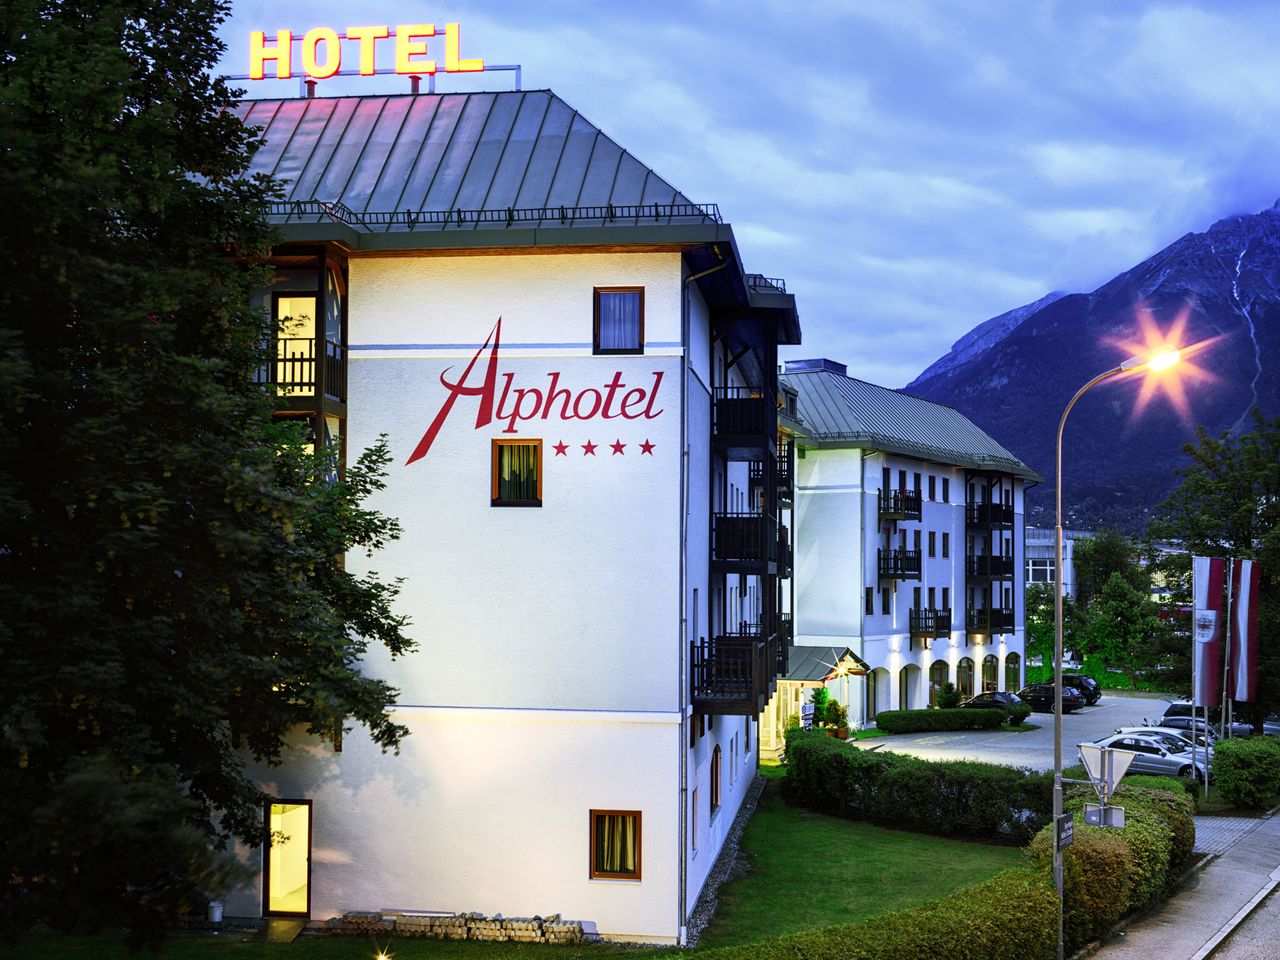 4 Tage im Alphotel Innsbruck mit Frühstück